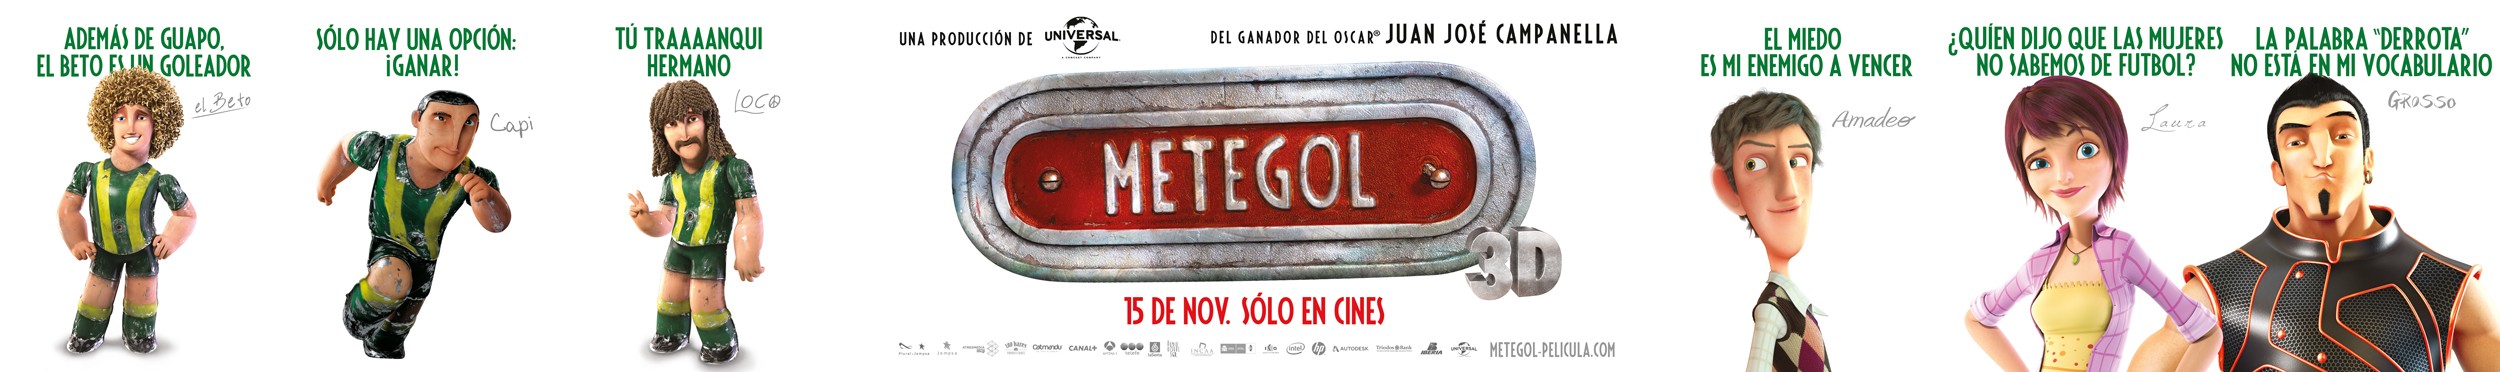 Mega Sized Movie Poster Image for Metegol (#13 of 27)